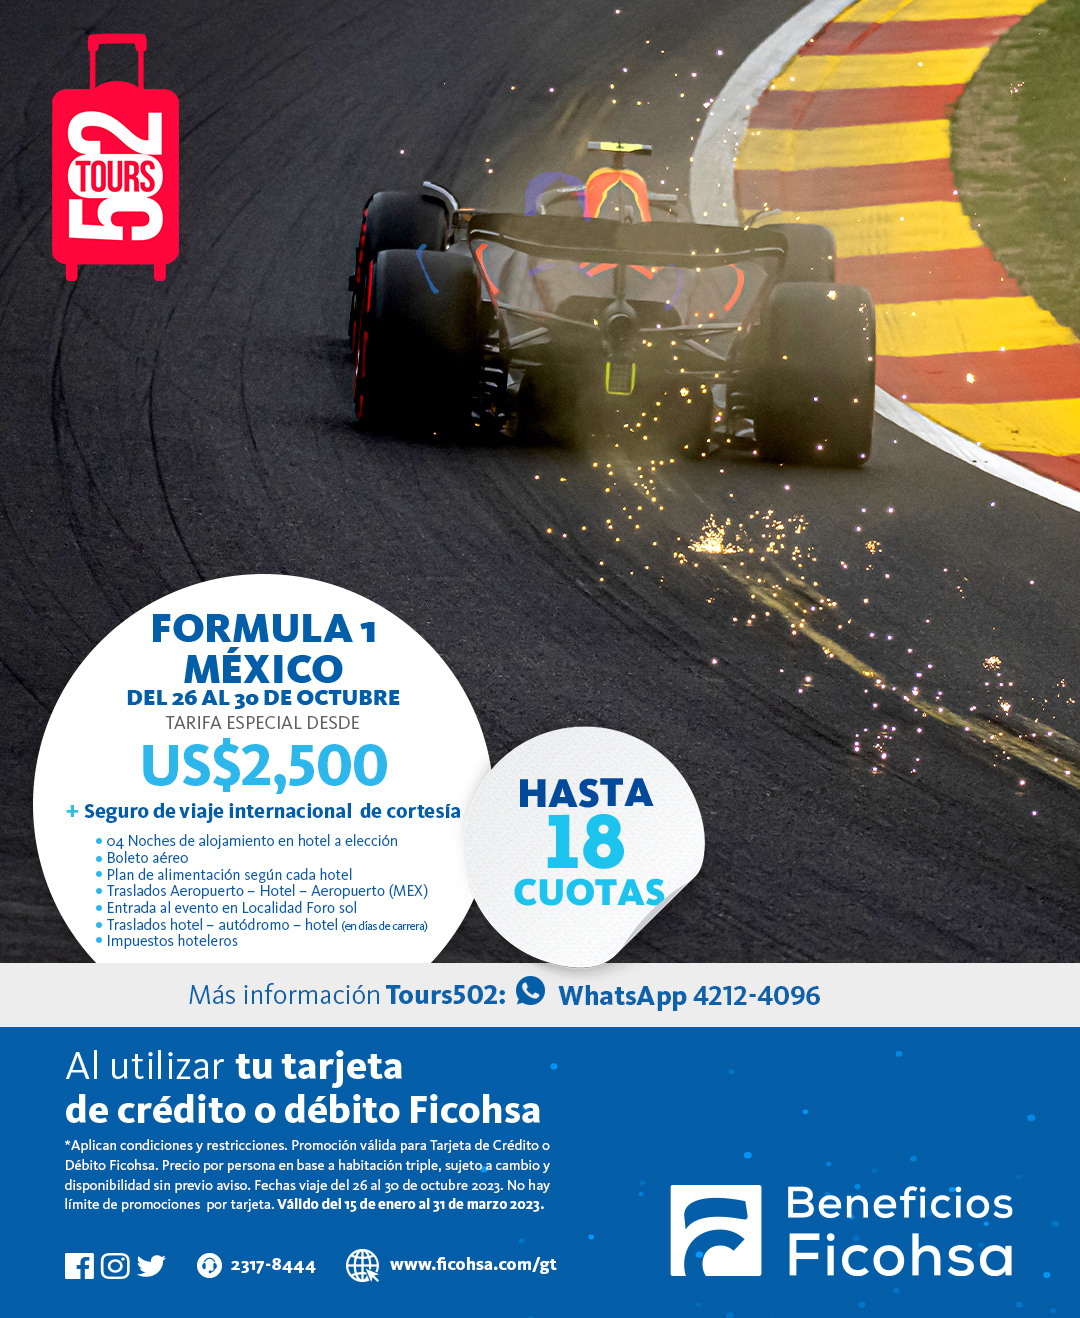 Viaja al Grand Prix de Formula 1 en Ciudad de México ¡Aplica hasta 18 cuotas!